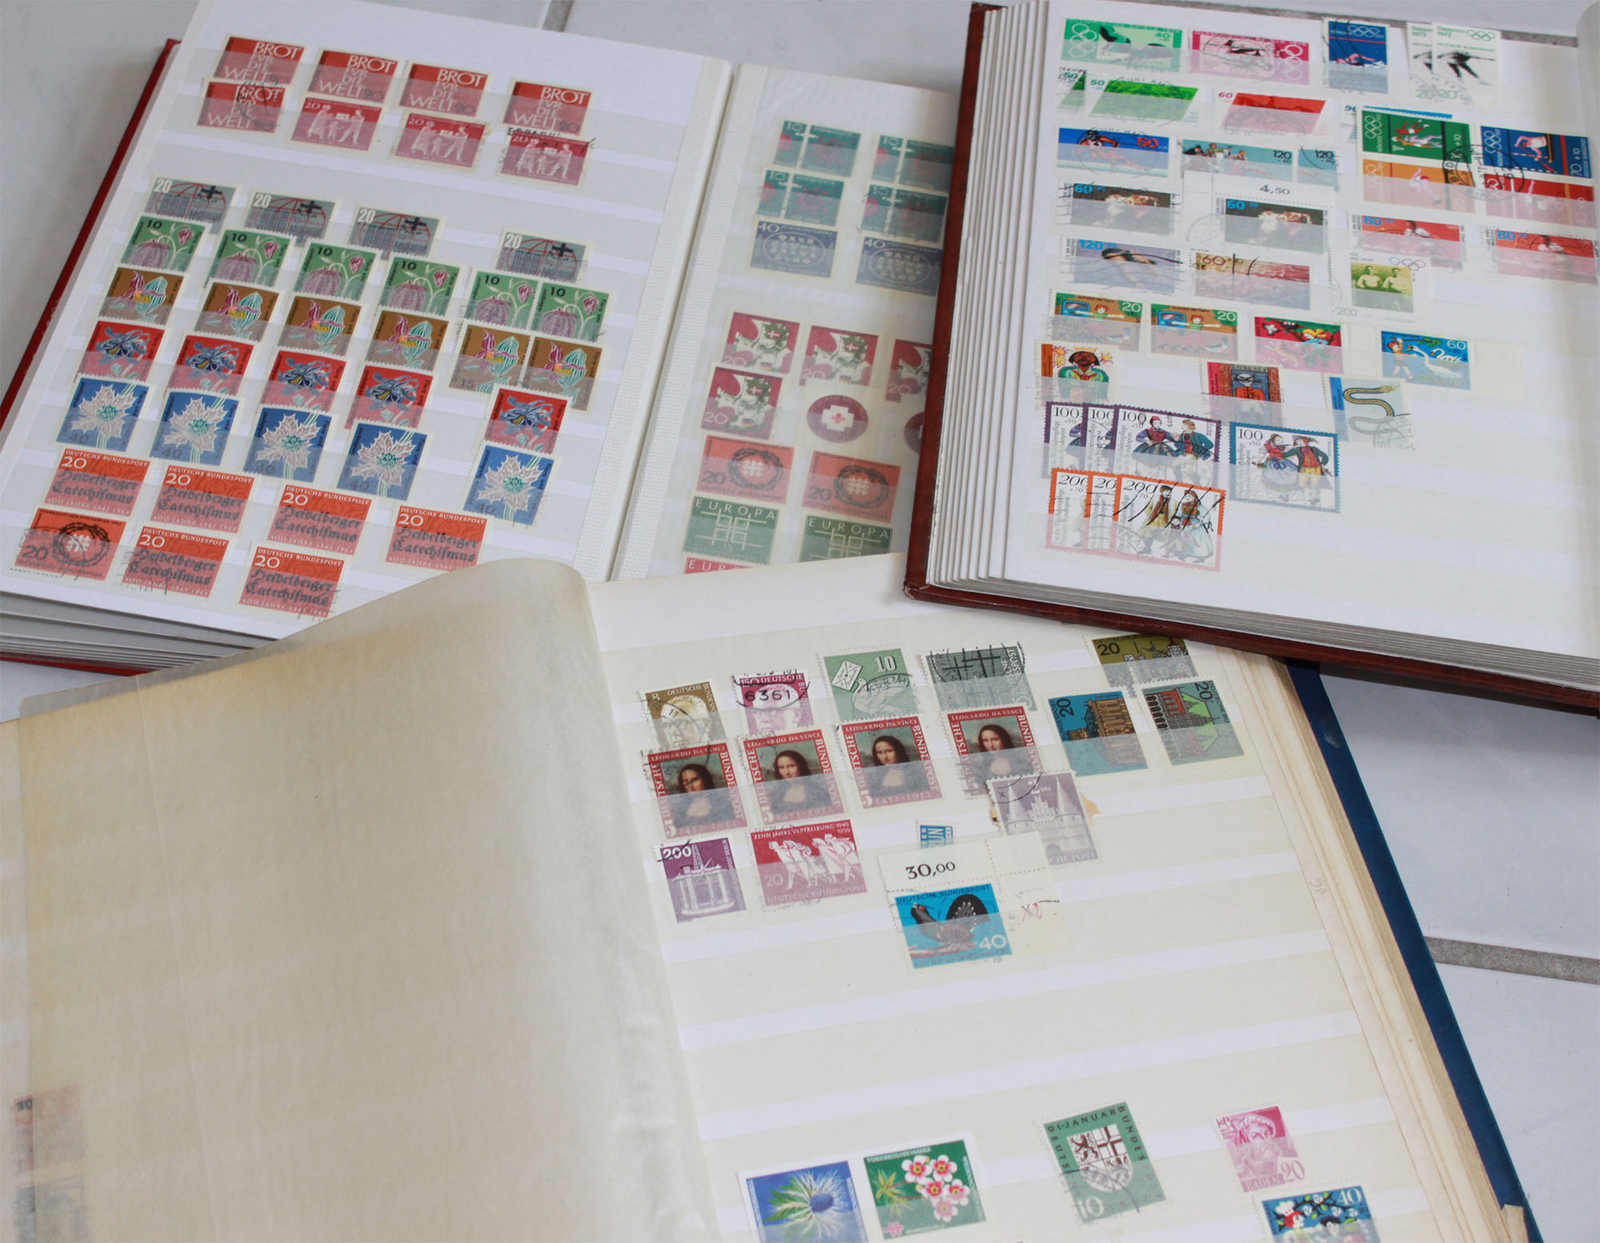 kleines Lot Briefmarkenalben, "BRD", insgesamt 8 StückMindestpreis: 20 EUR - Image 2 of 3